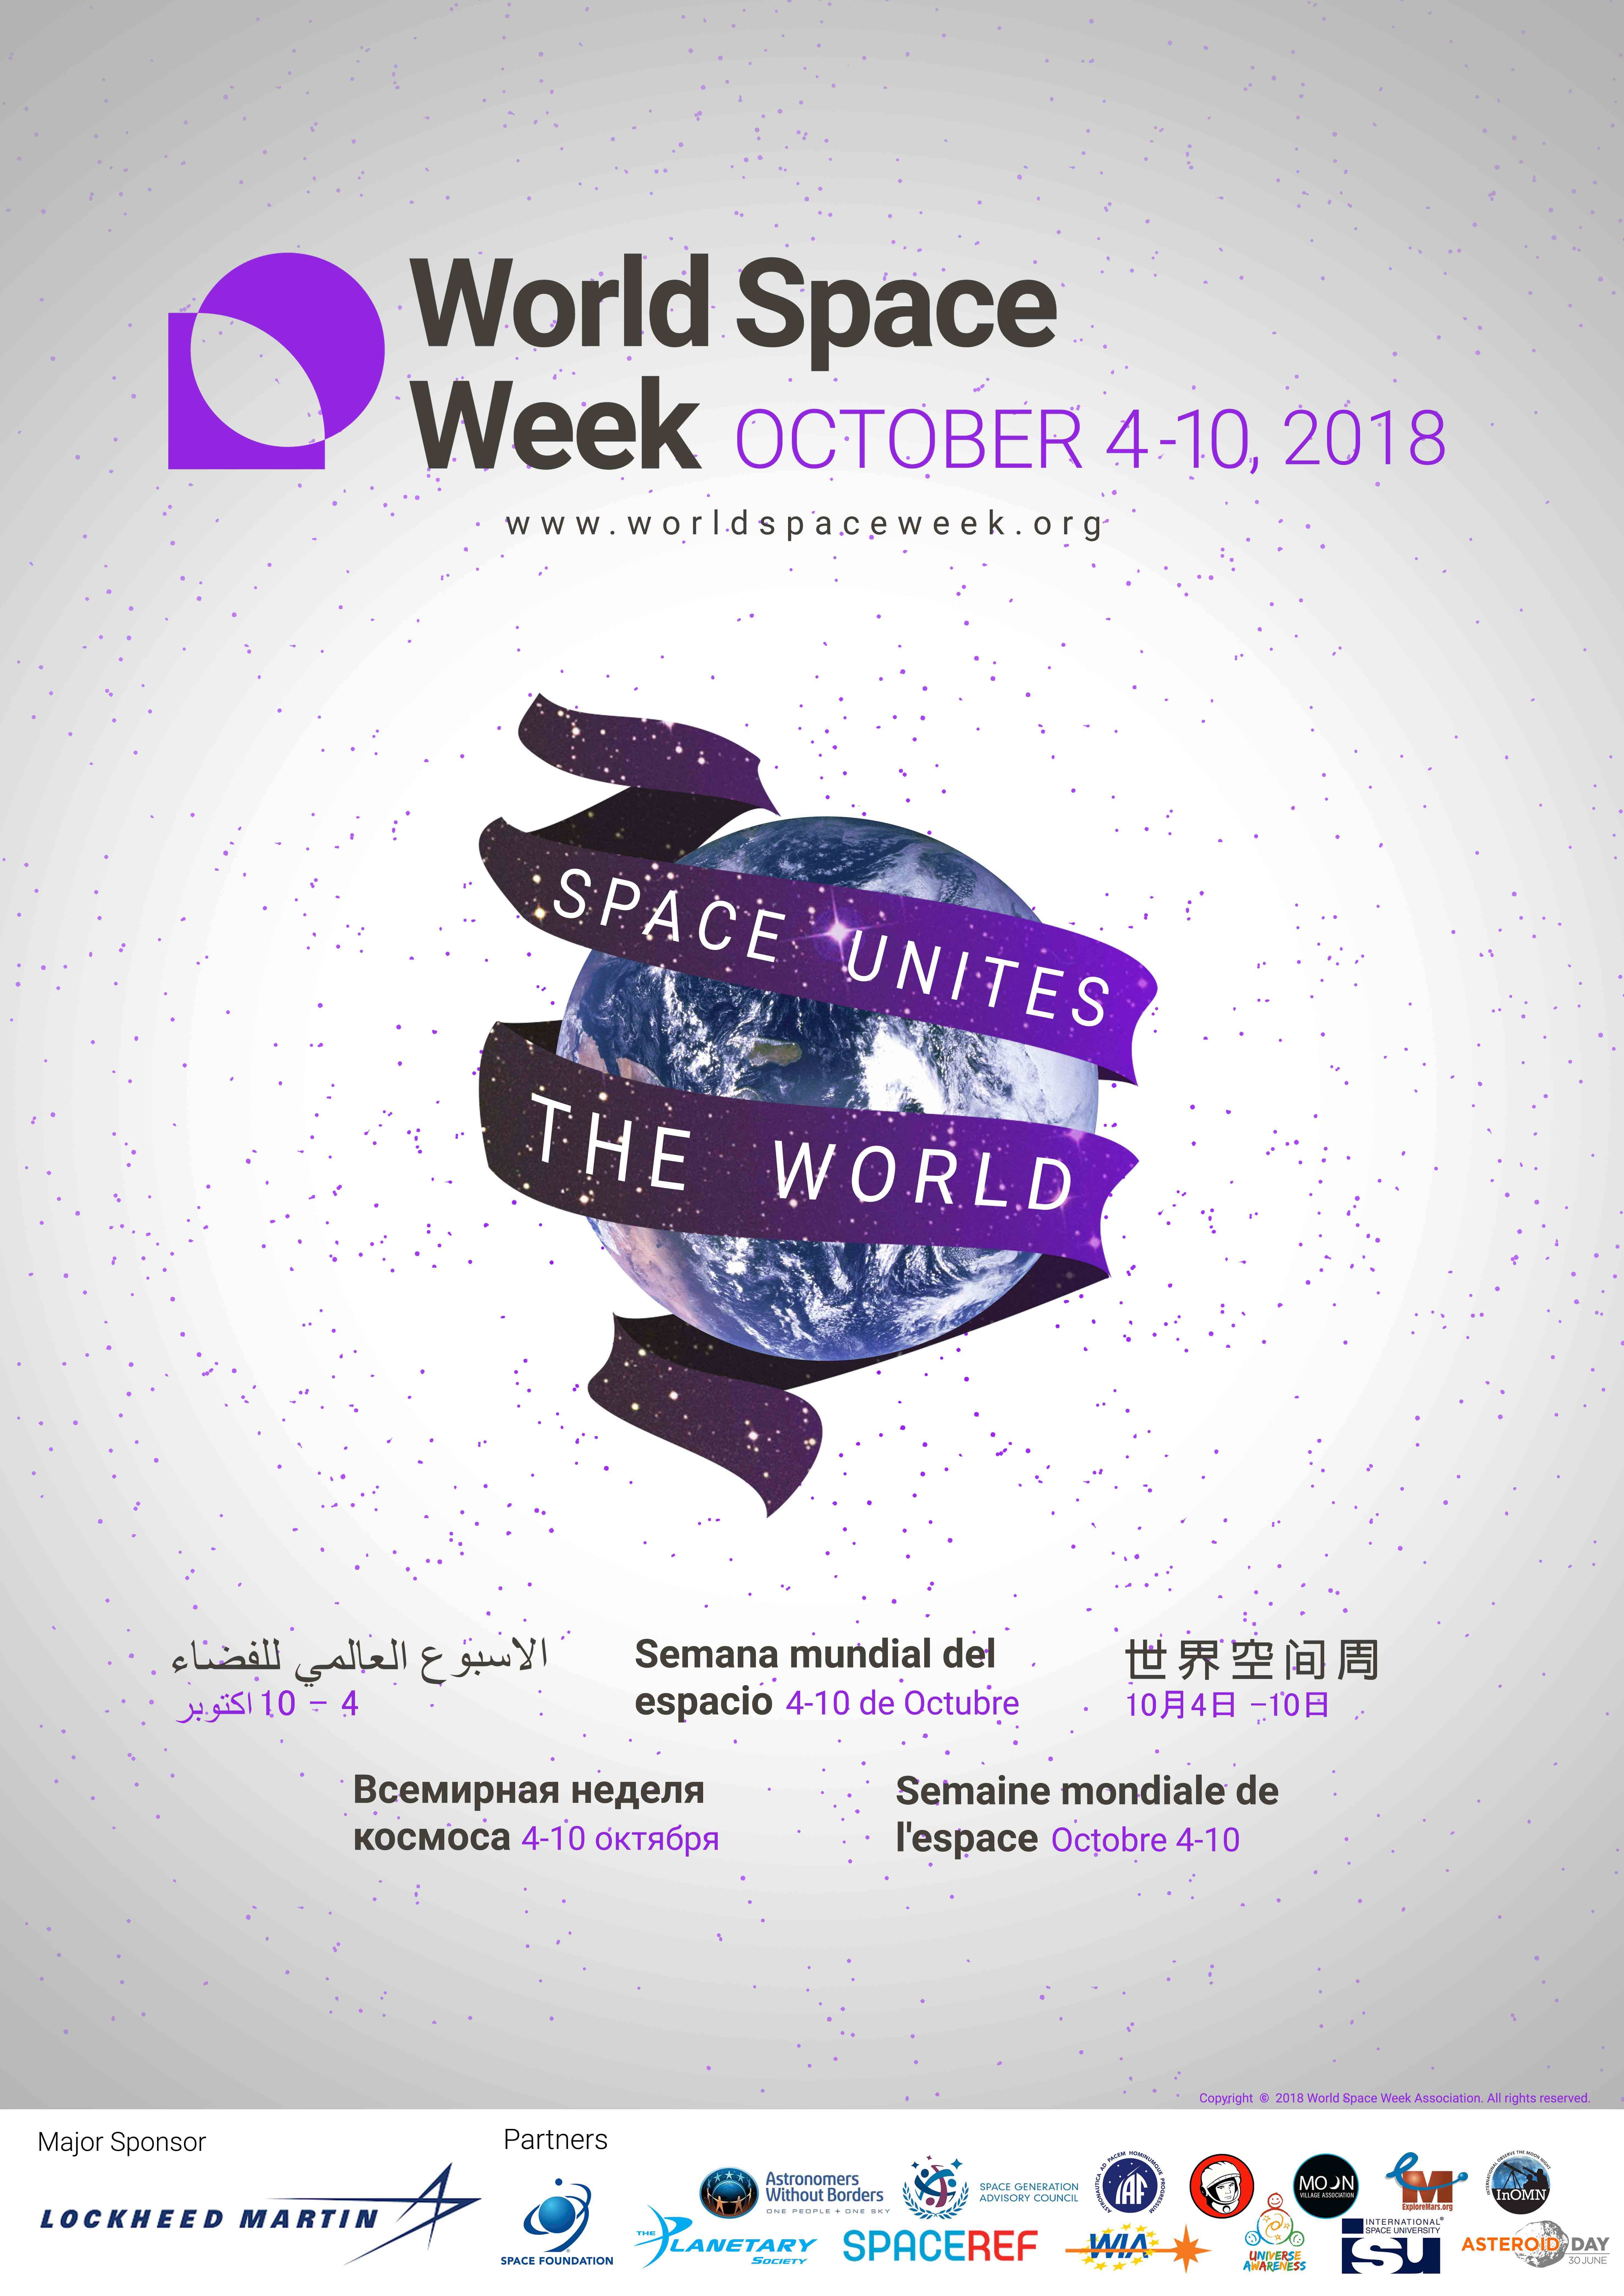 هفته جهانی فضا در سال جاری از ۱۲ تا ۱۸ مهر برابر با ۴ تا ۱۰ اکتبر برگزار می‌شود و این انجمن شعار هفته جهانی فضا در سال ۲۰۱۸ را " فضا جهان را متحد می‌کند " اعلام کرده است.